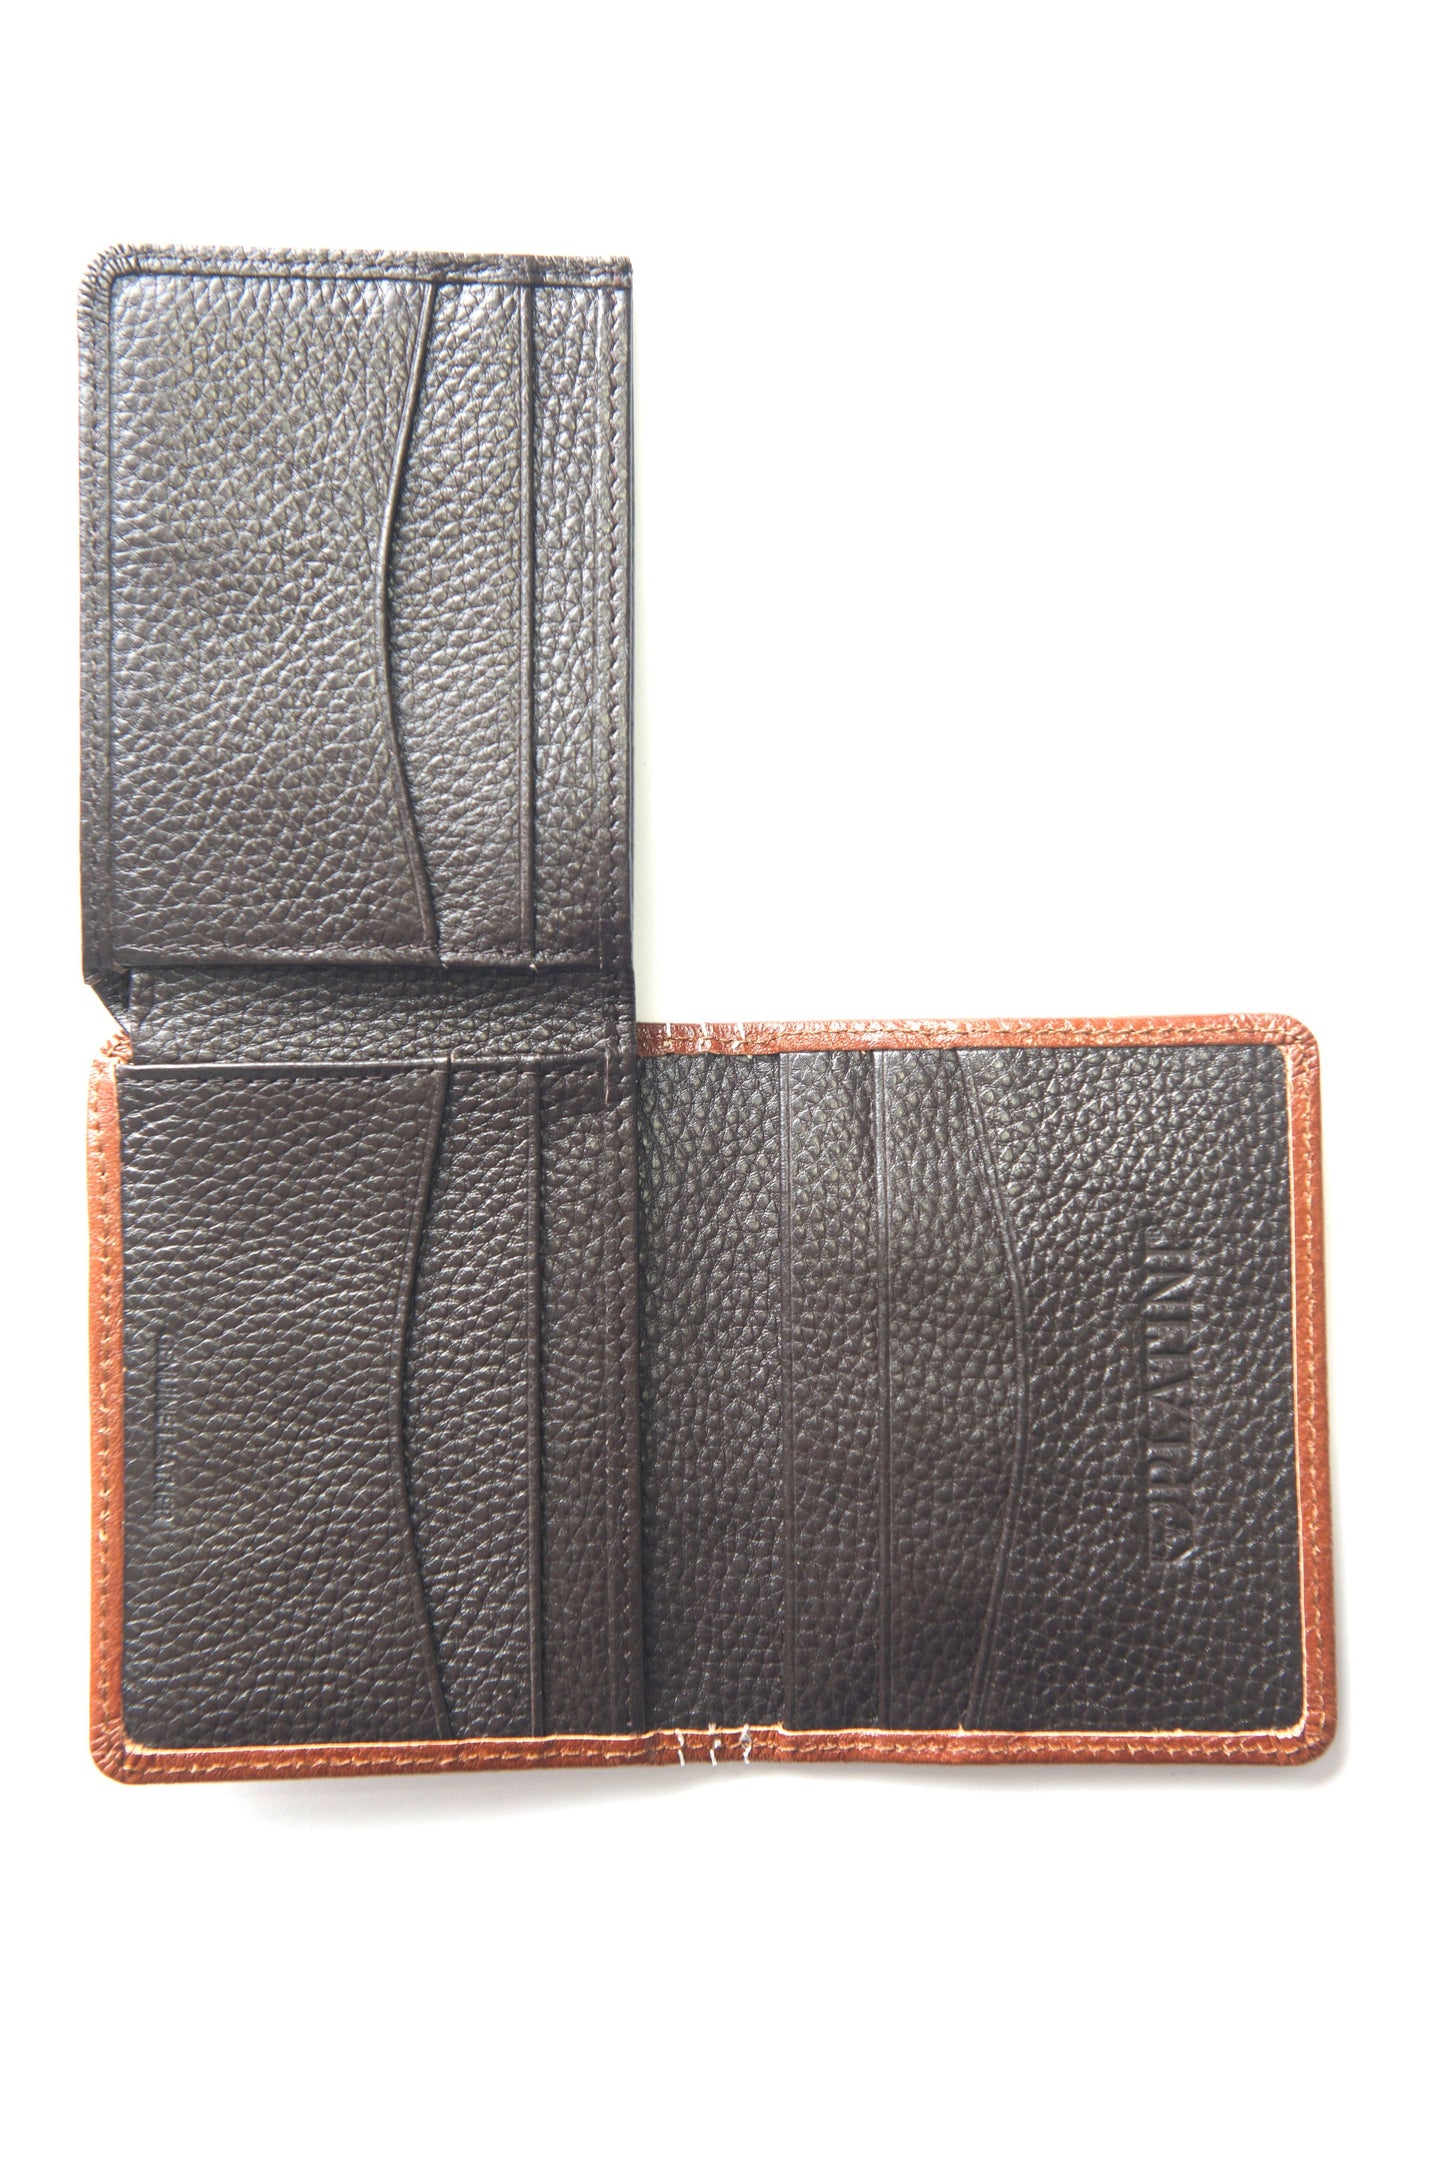 Men's Genuine Leather Wallets - Cognac